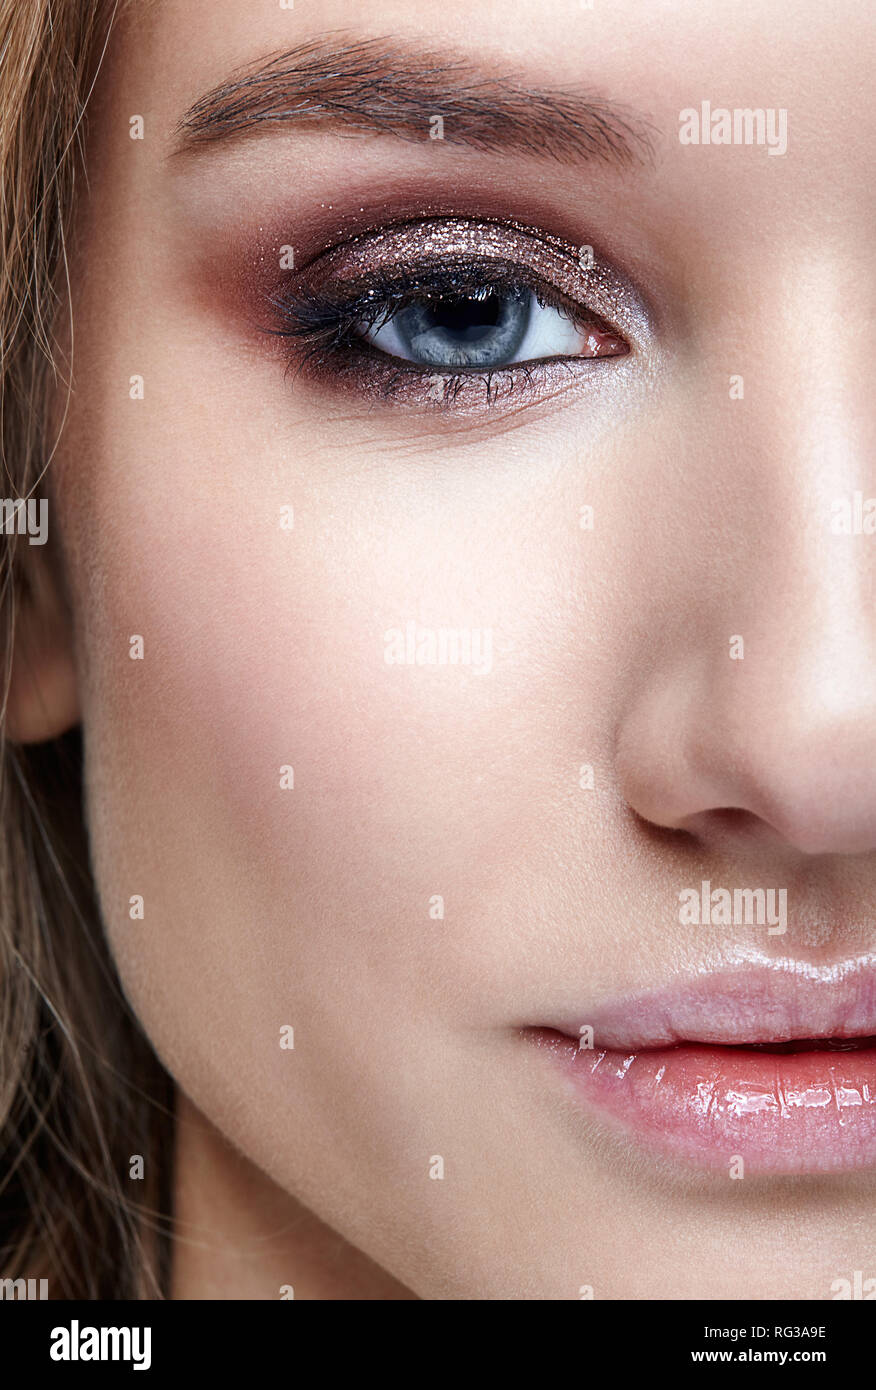 Closeup macro shot of human woman face. Female with smoky eyes makeup Stock Photo